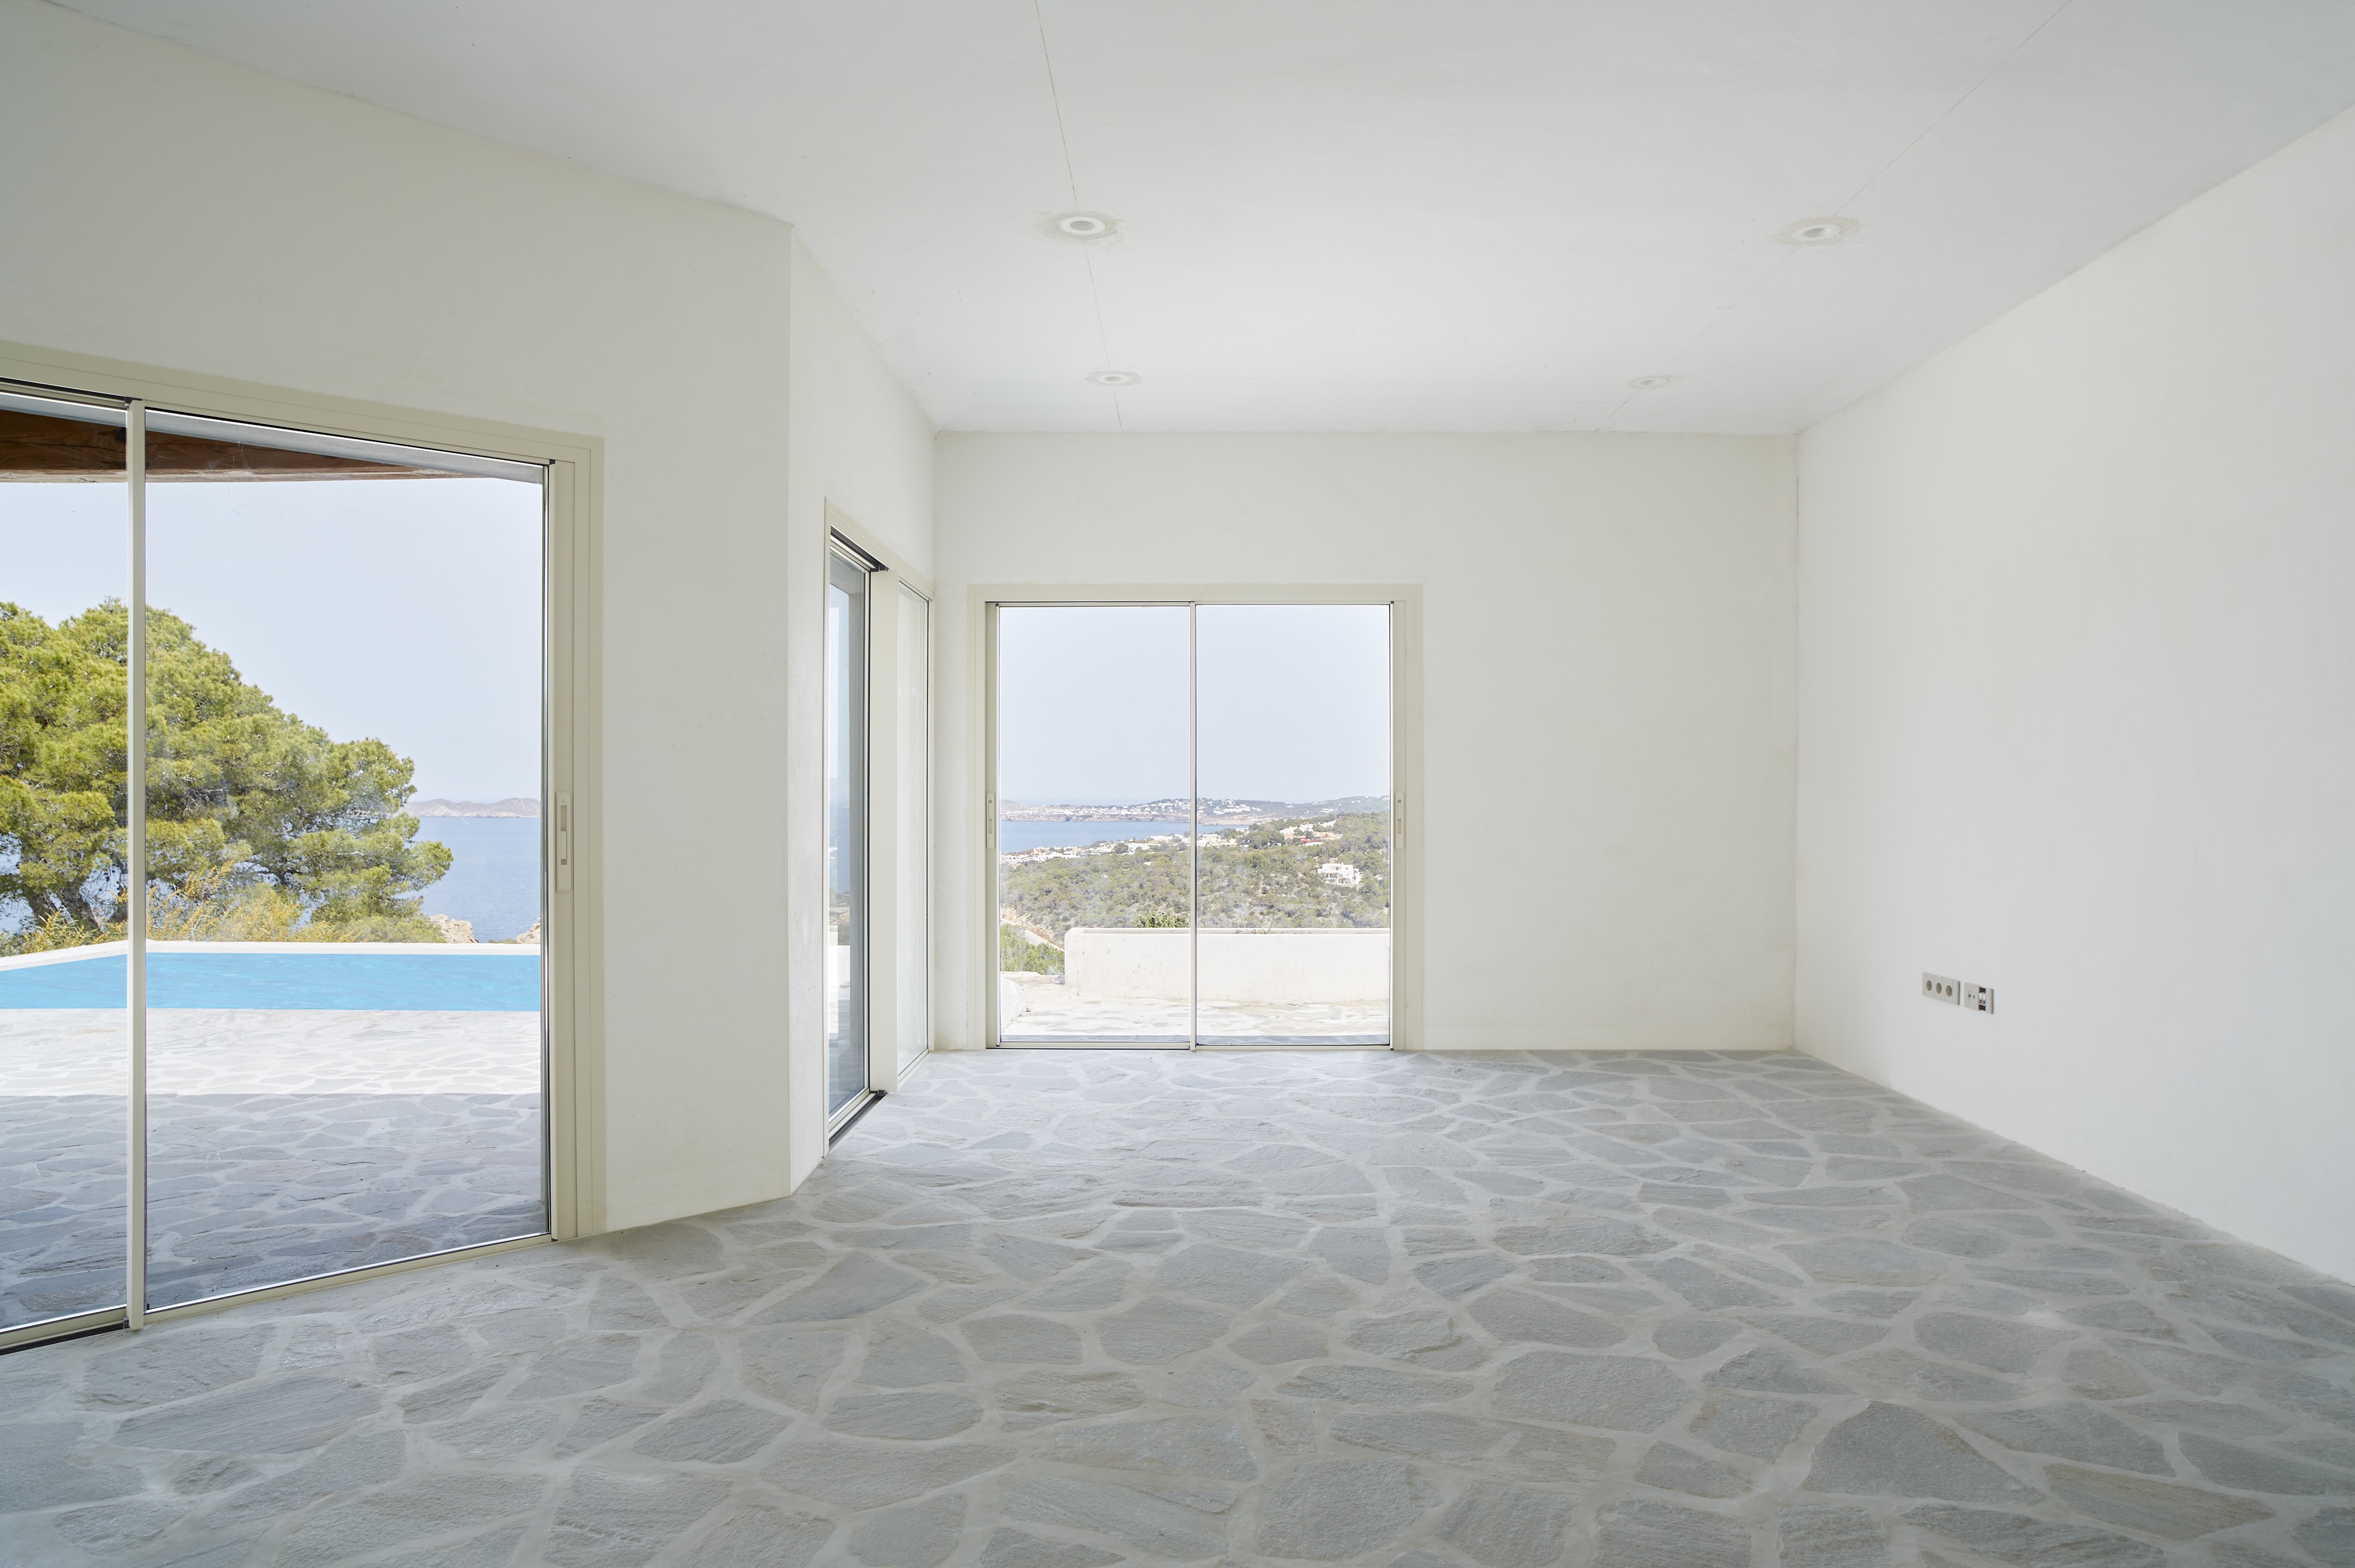 Villa renovada a estrenar con impresionantes vistas al mar - 3